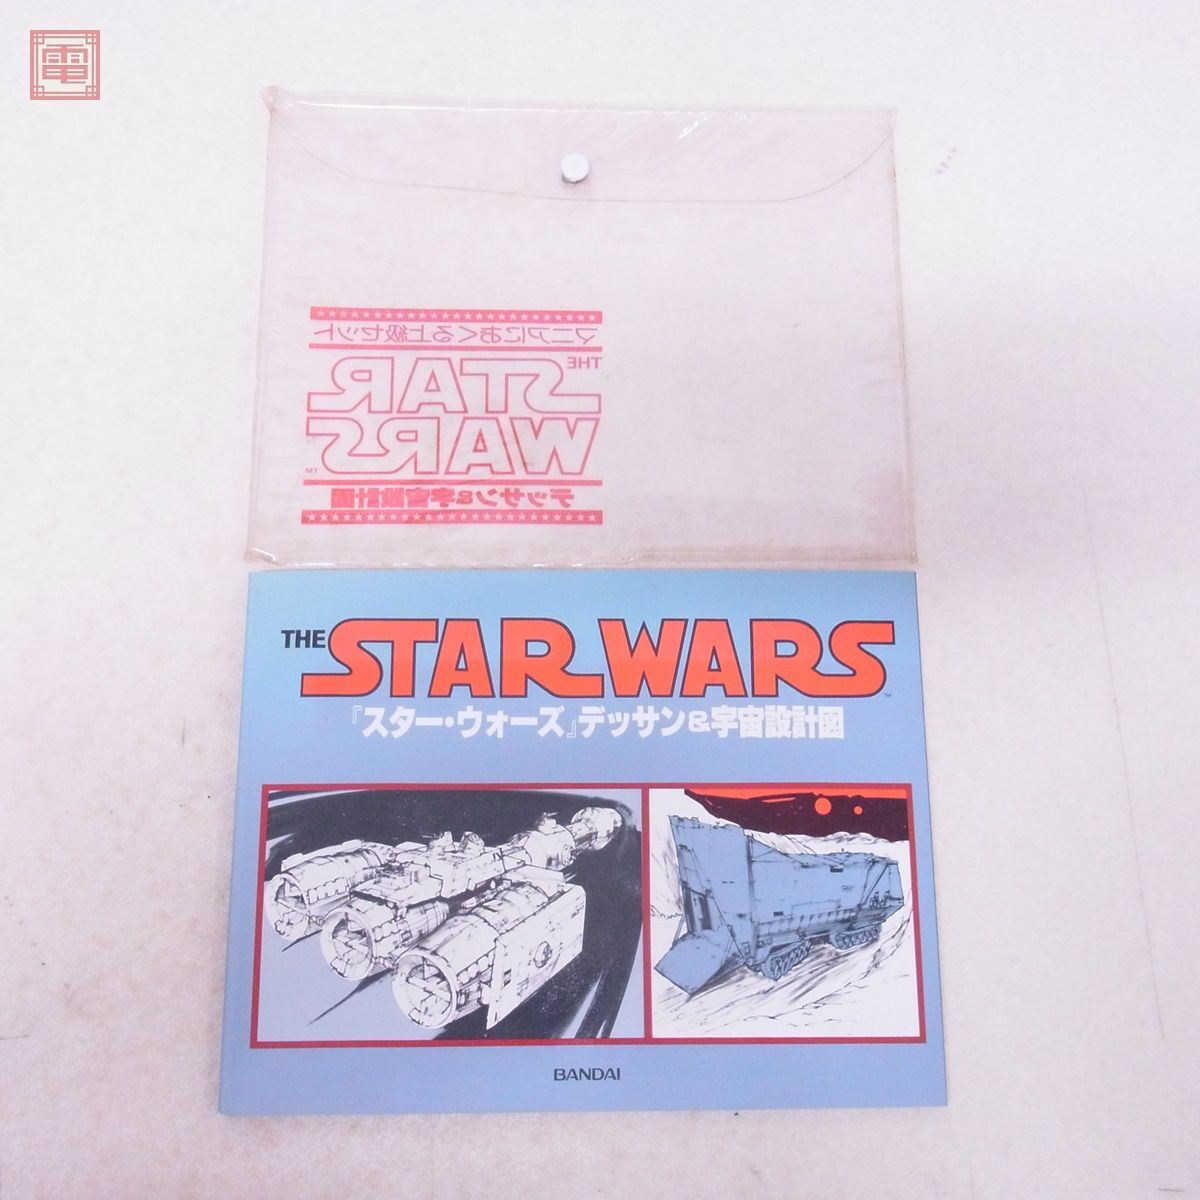  литература Bandai Звездные войны te солнечный & космос проект map первая версия 1978 год BANDAI STAR WARS[PP